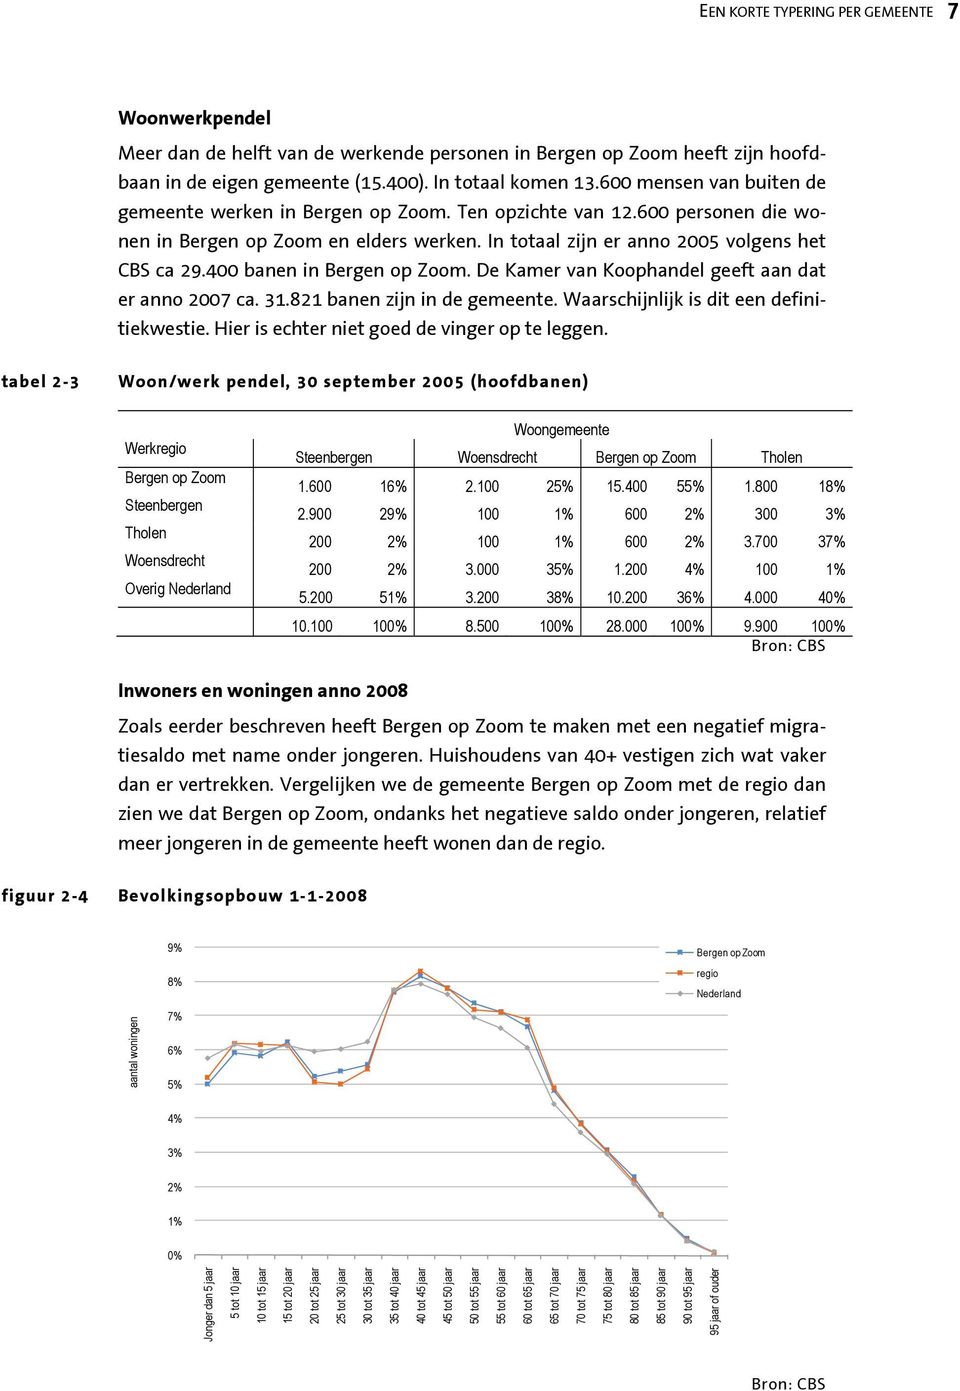 400 banen in Bergen op Zoom. De Kamer van Koophandel geeft aan dat er anno 2007 ca. 31.821 banen zijn in de gemeente. Waarschijnlijk is dit een definitiekwestie.